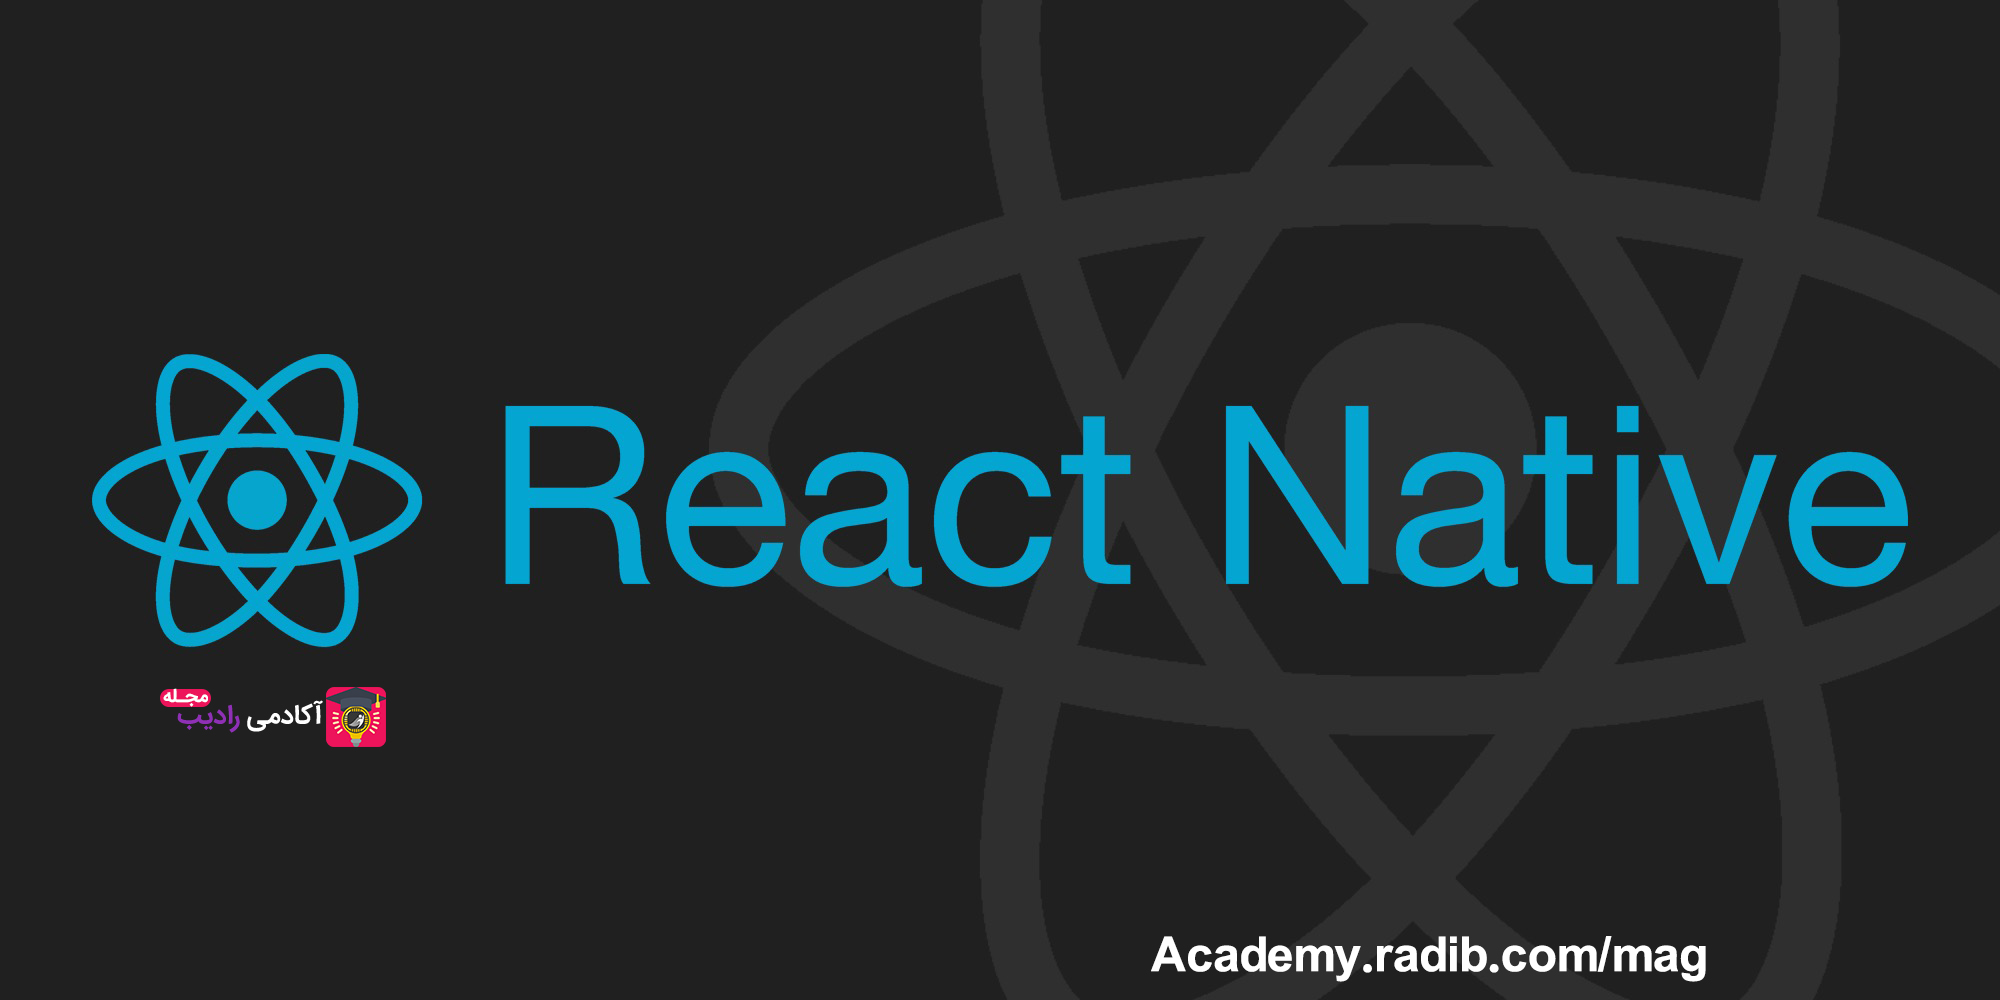 7 وب سایت آموزش React Native برای یادگیری ری‌اکت نیتیو